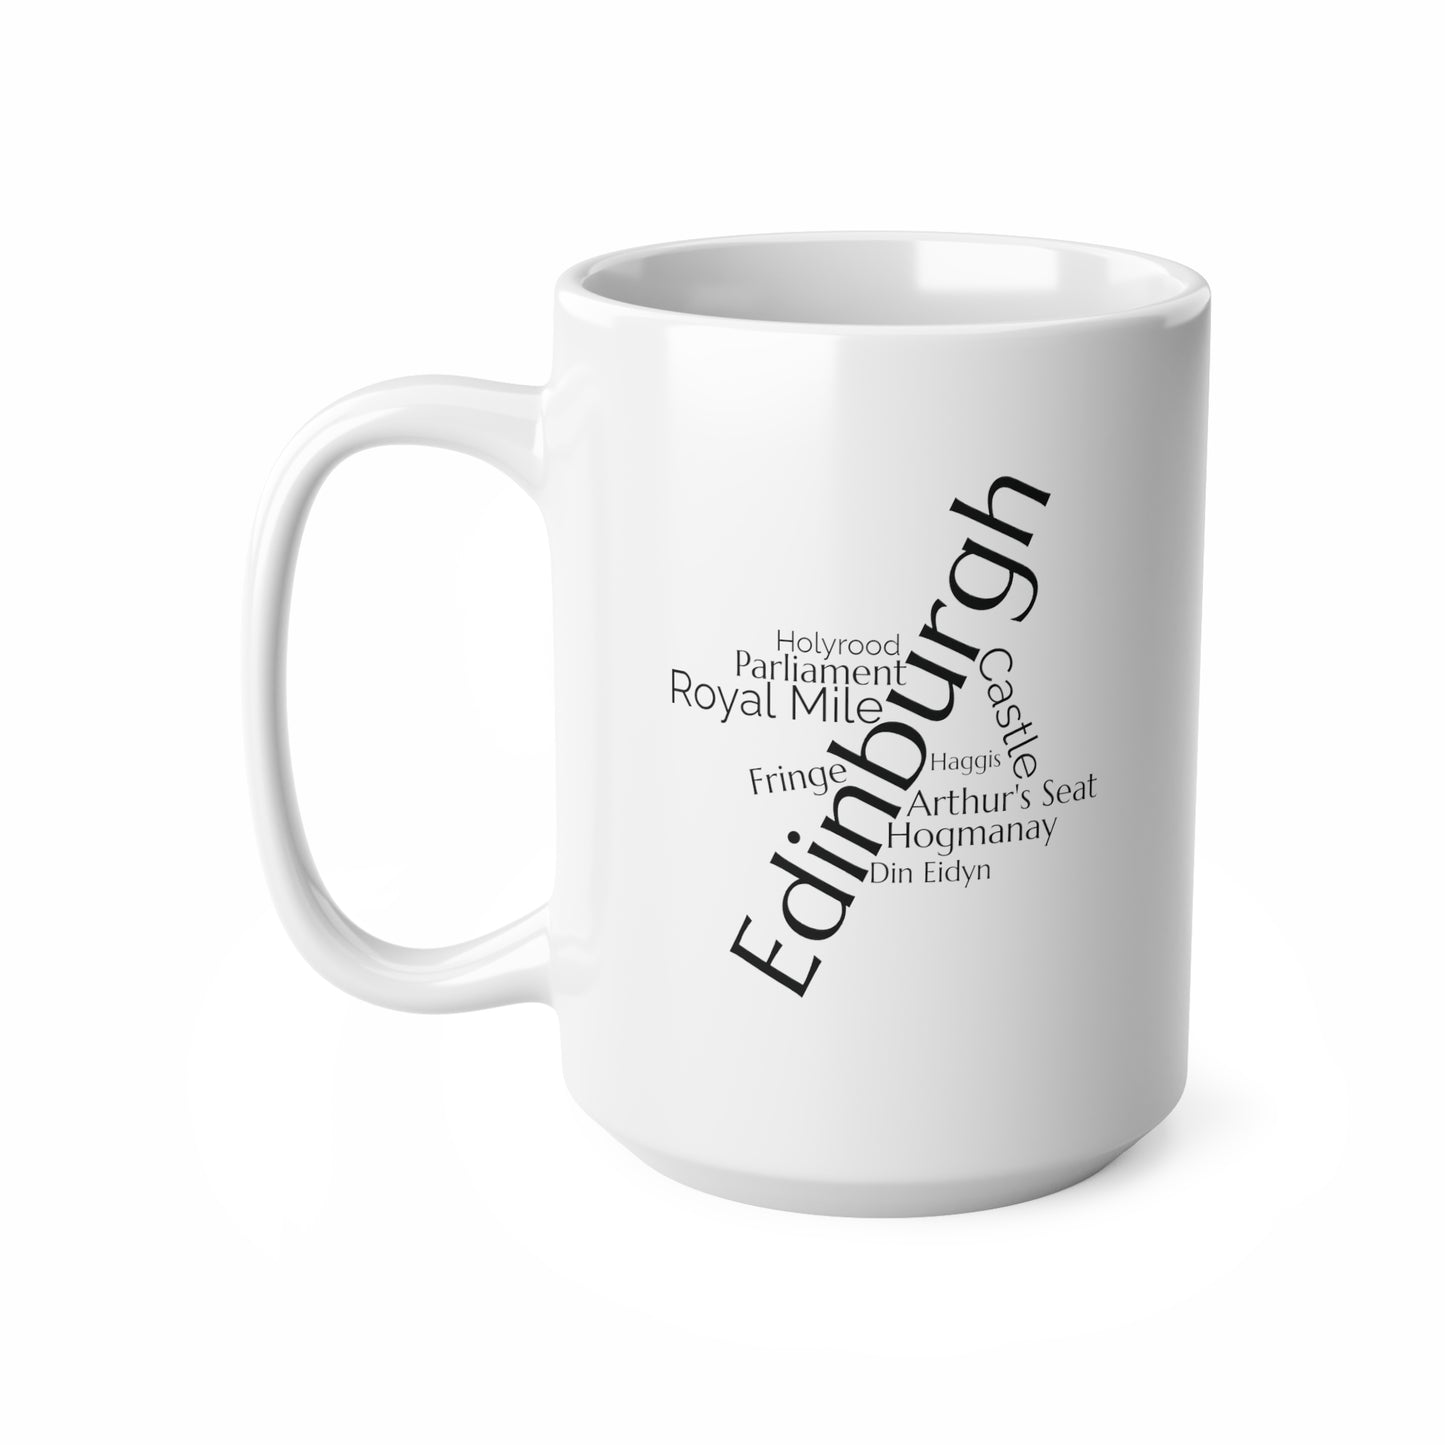 Edinburgh word mug, local mug, geography mug, gift, mug, coffee cup, word mug, wordcloud mug, christmas gift, birthday gift